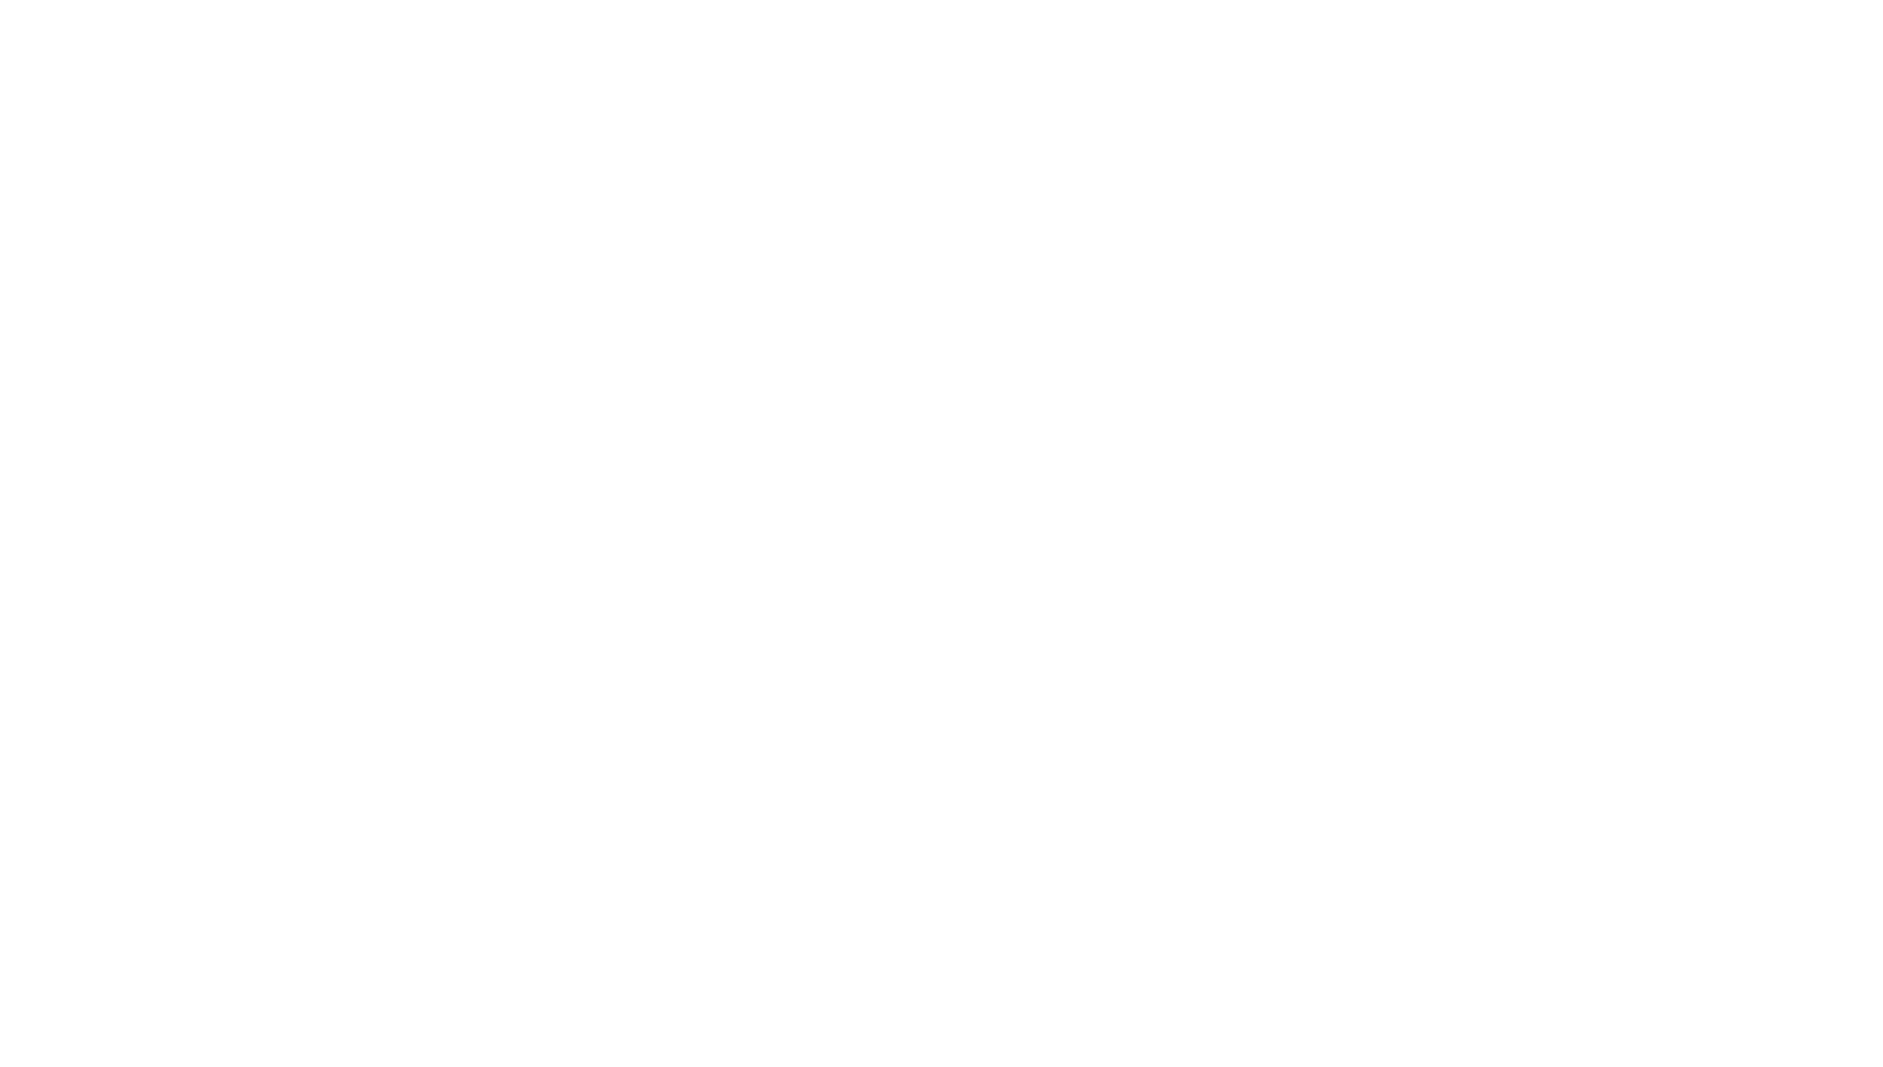 Cake Boss logo